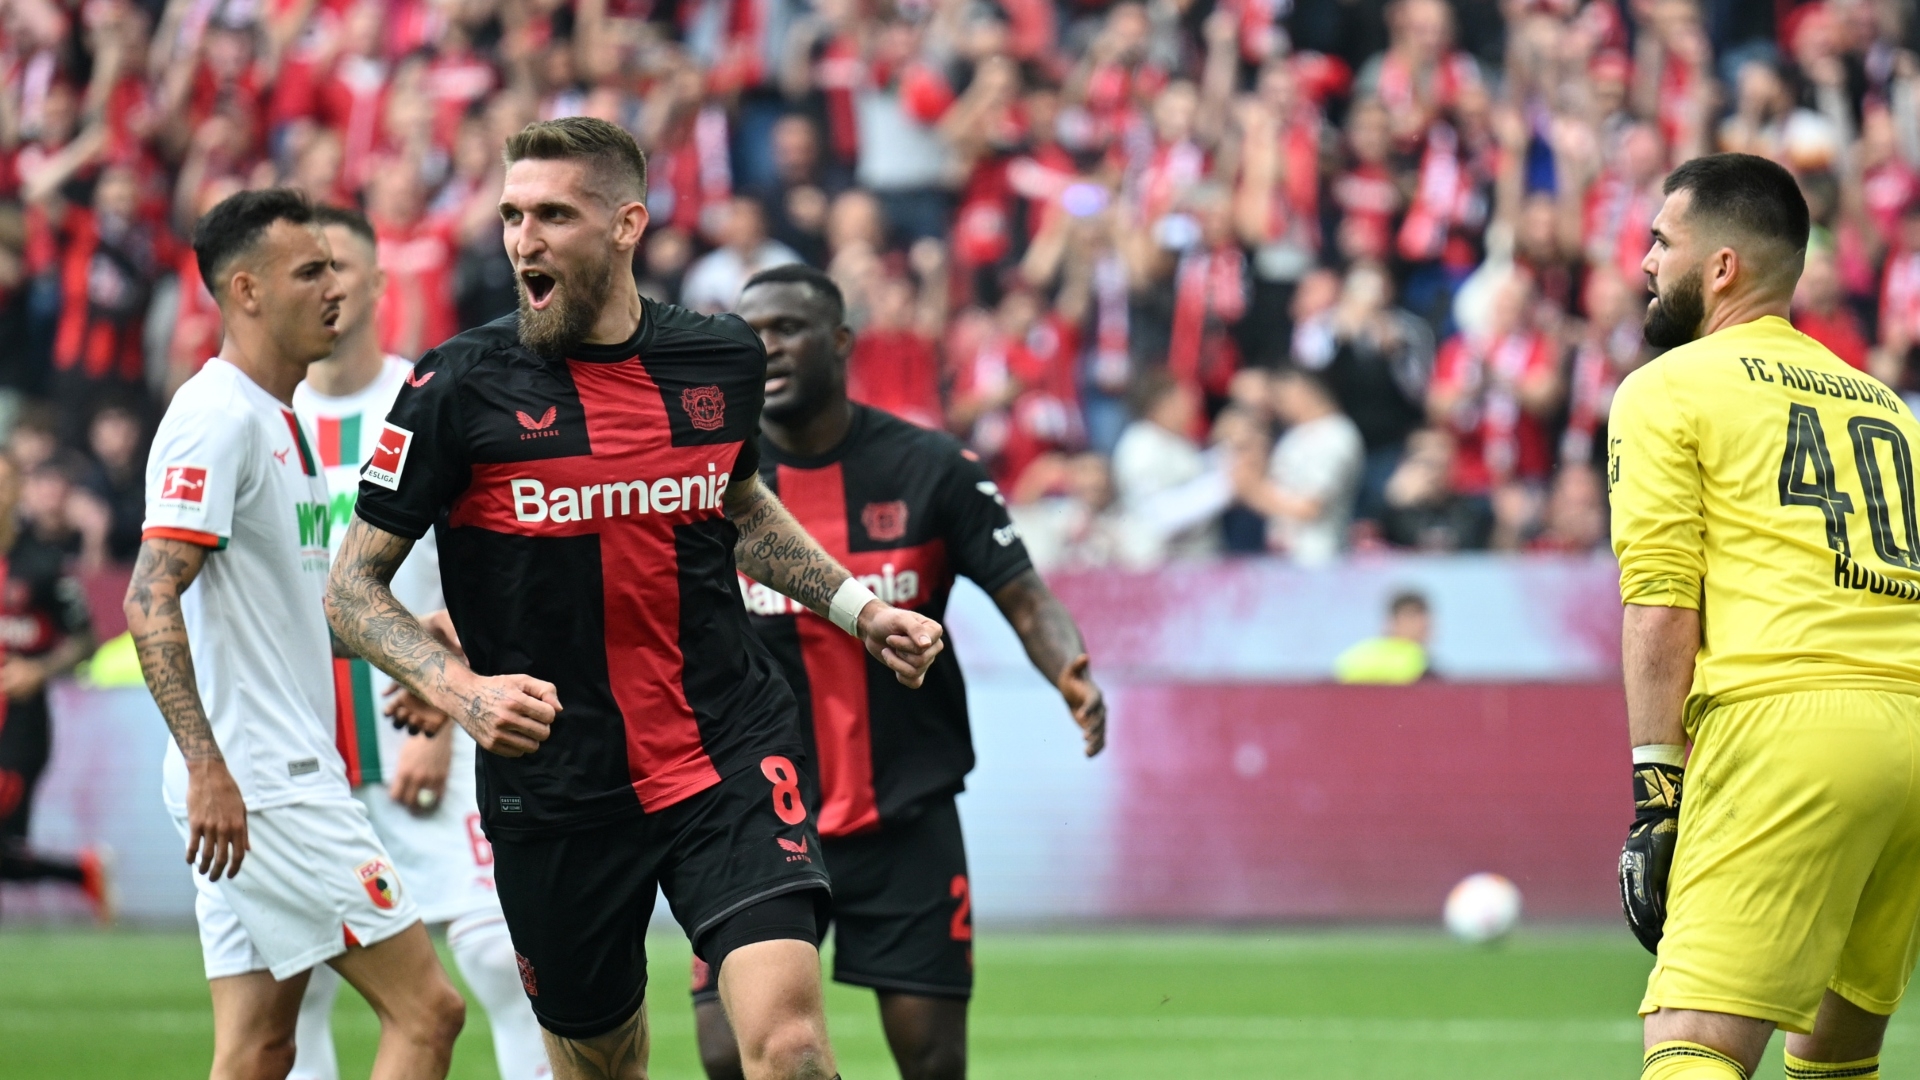 Leverkusen close in on unbeaten season with 2-0 lead vs. Augsburg